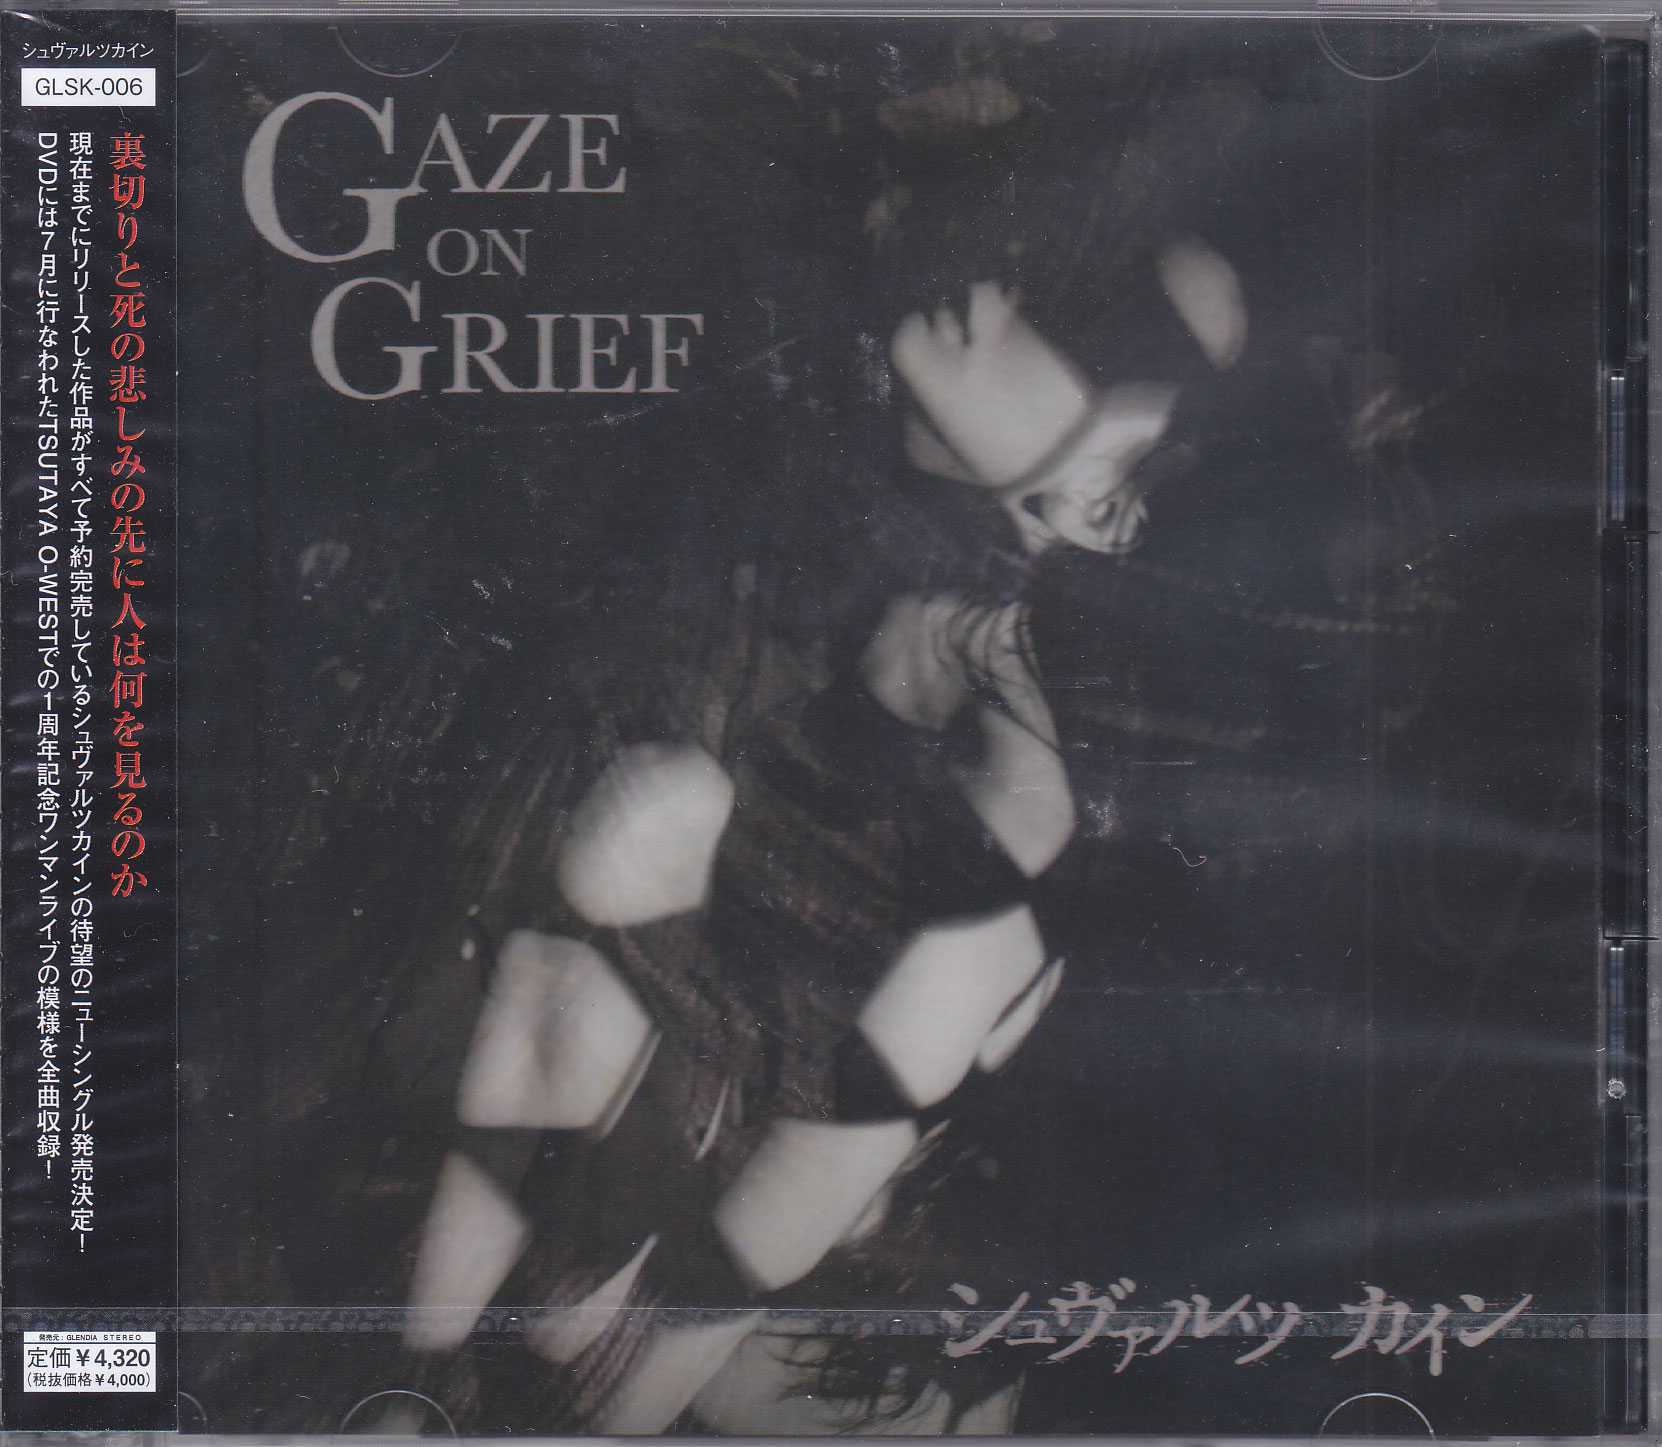 シュヴァルツカイン の CD GAZE ON GRIEF